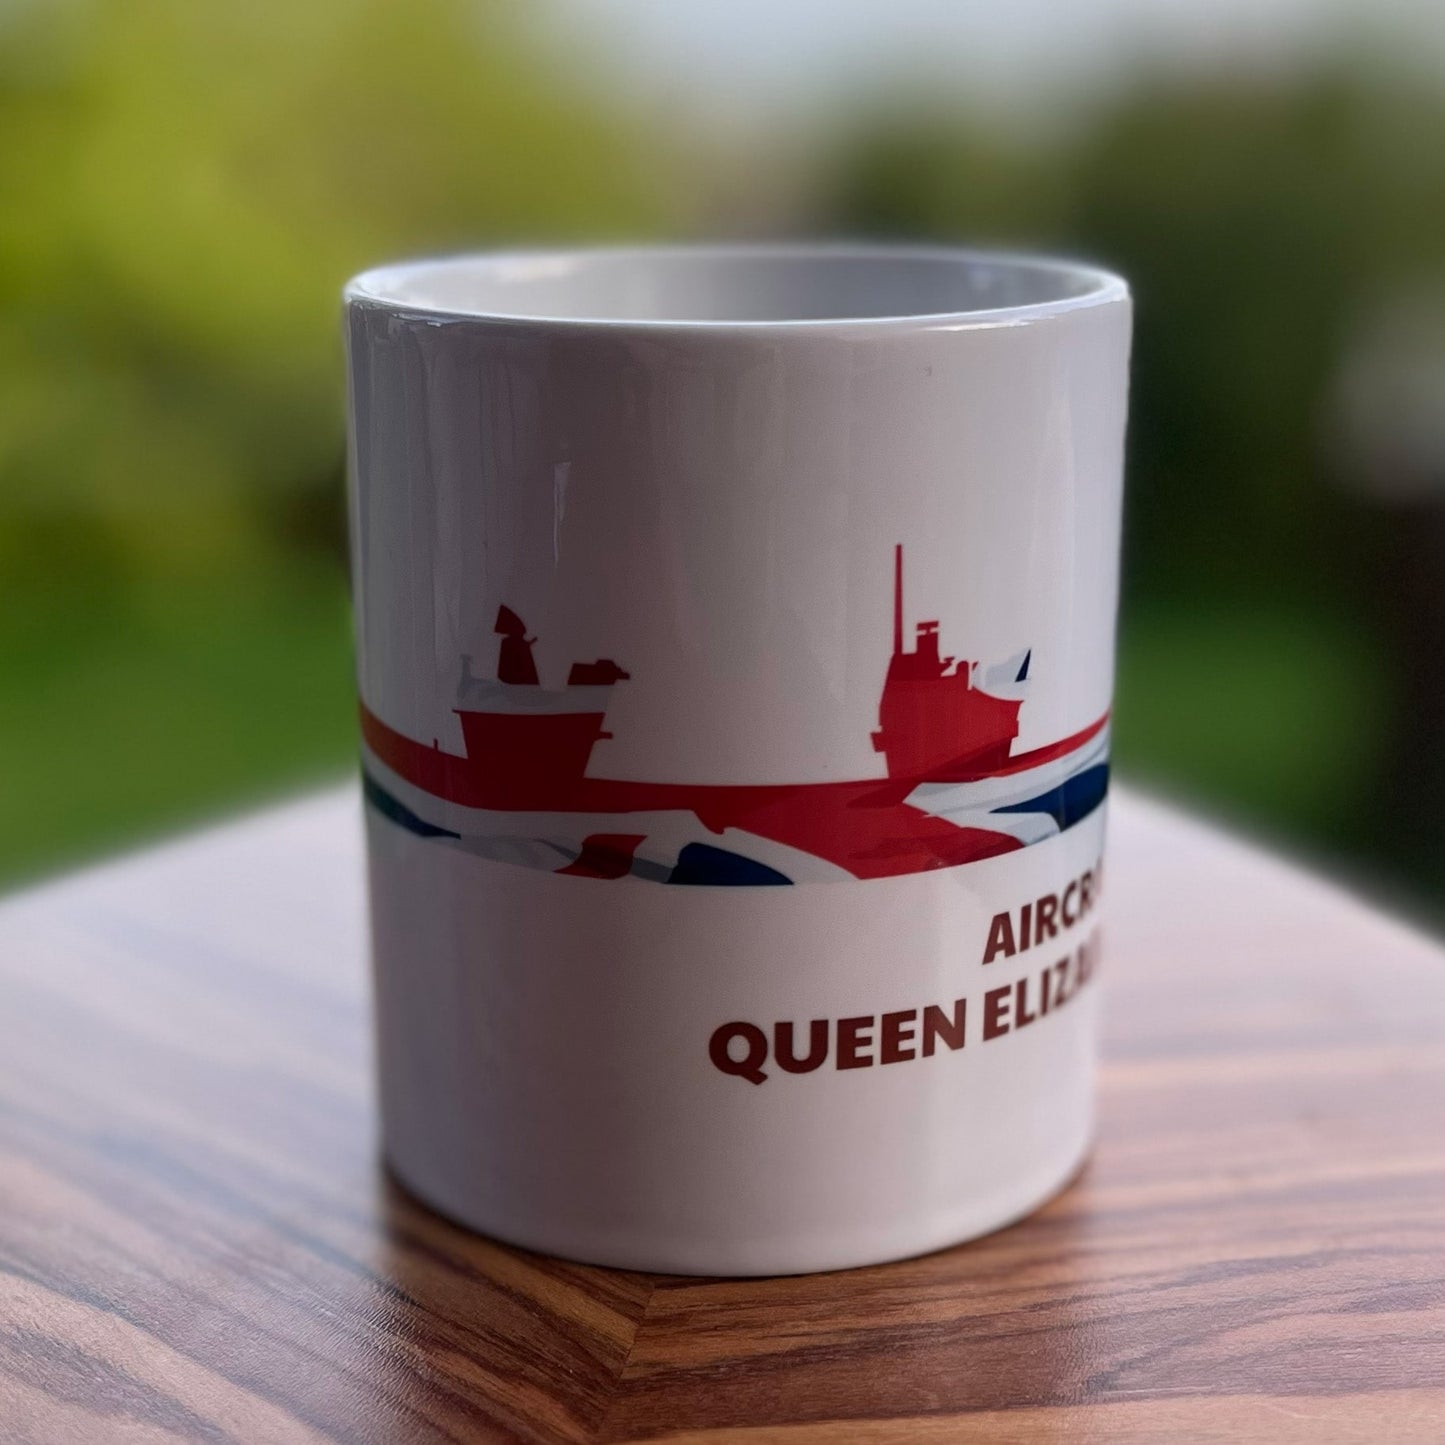 Queen Elizabeth Class Union Flag Mug